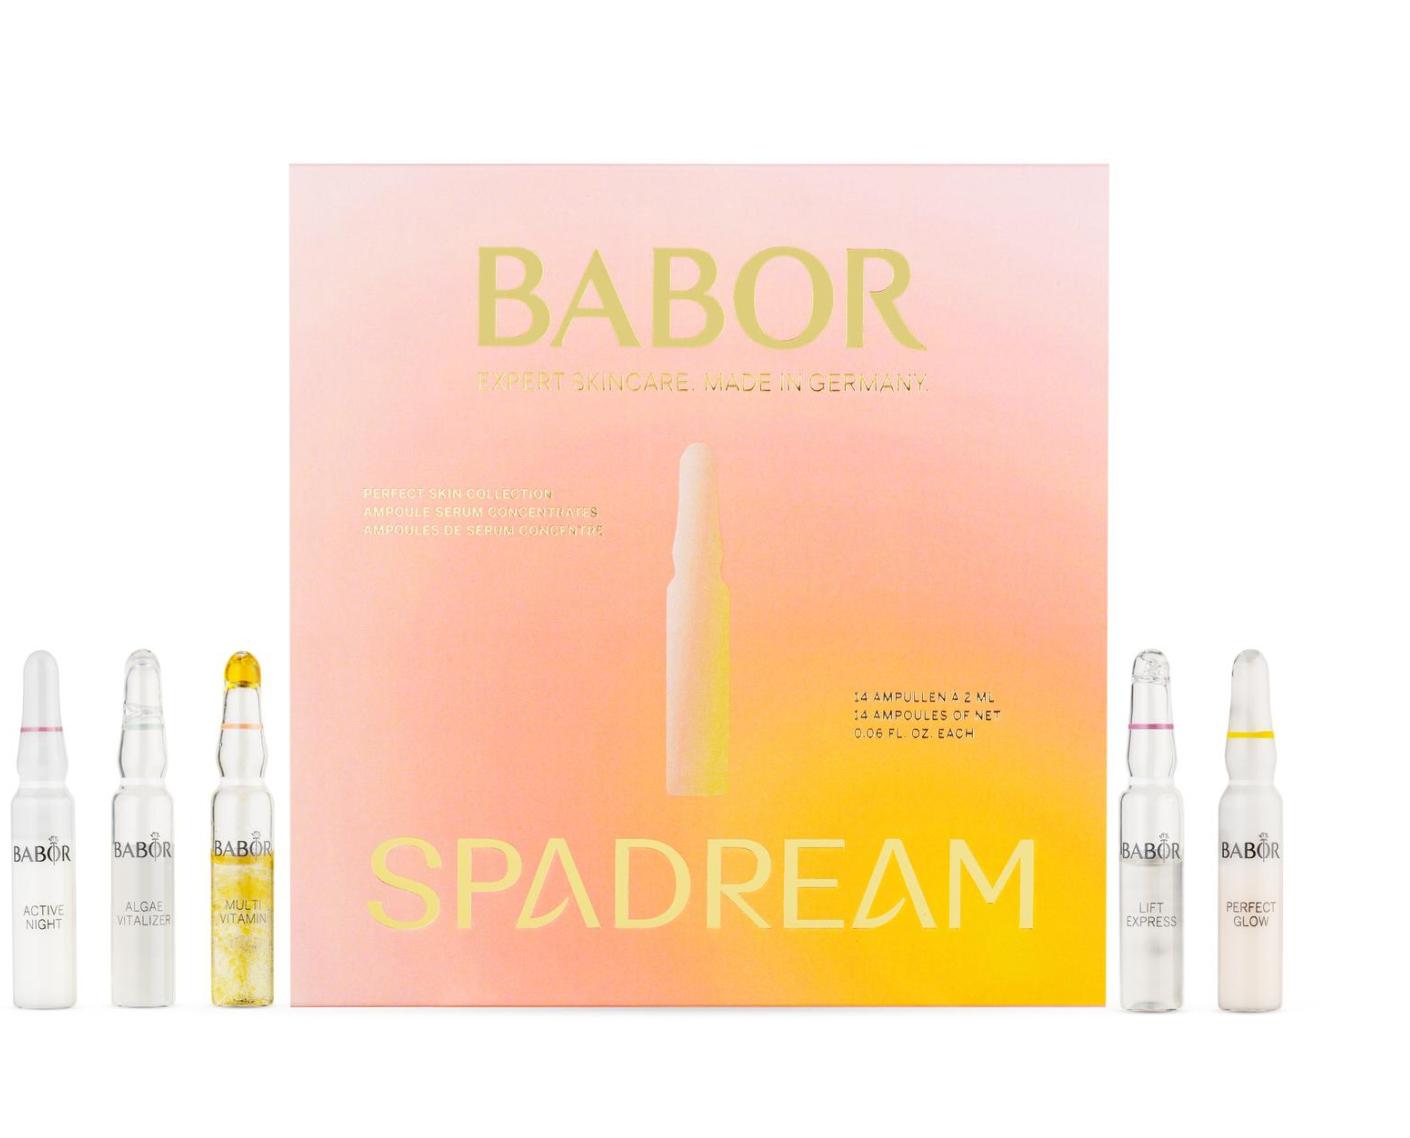 BABOR&SPADREAM 14 Days Amp Promo Set Spring Edition - интернет-магазин профессиональной косметики Spadream, изображение 52710